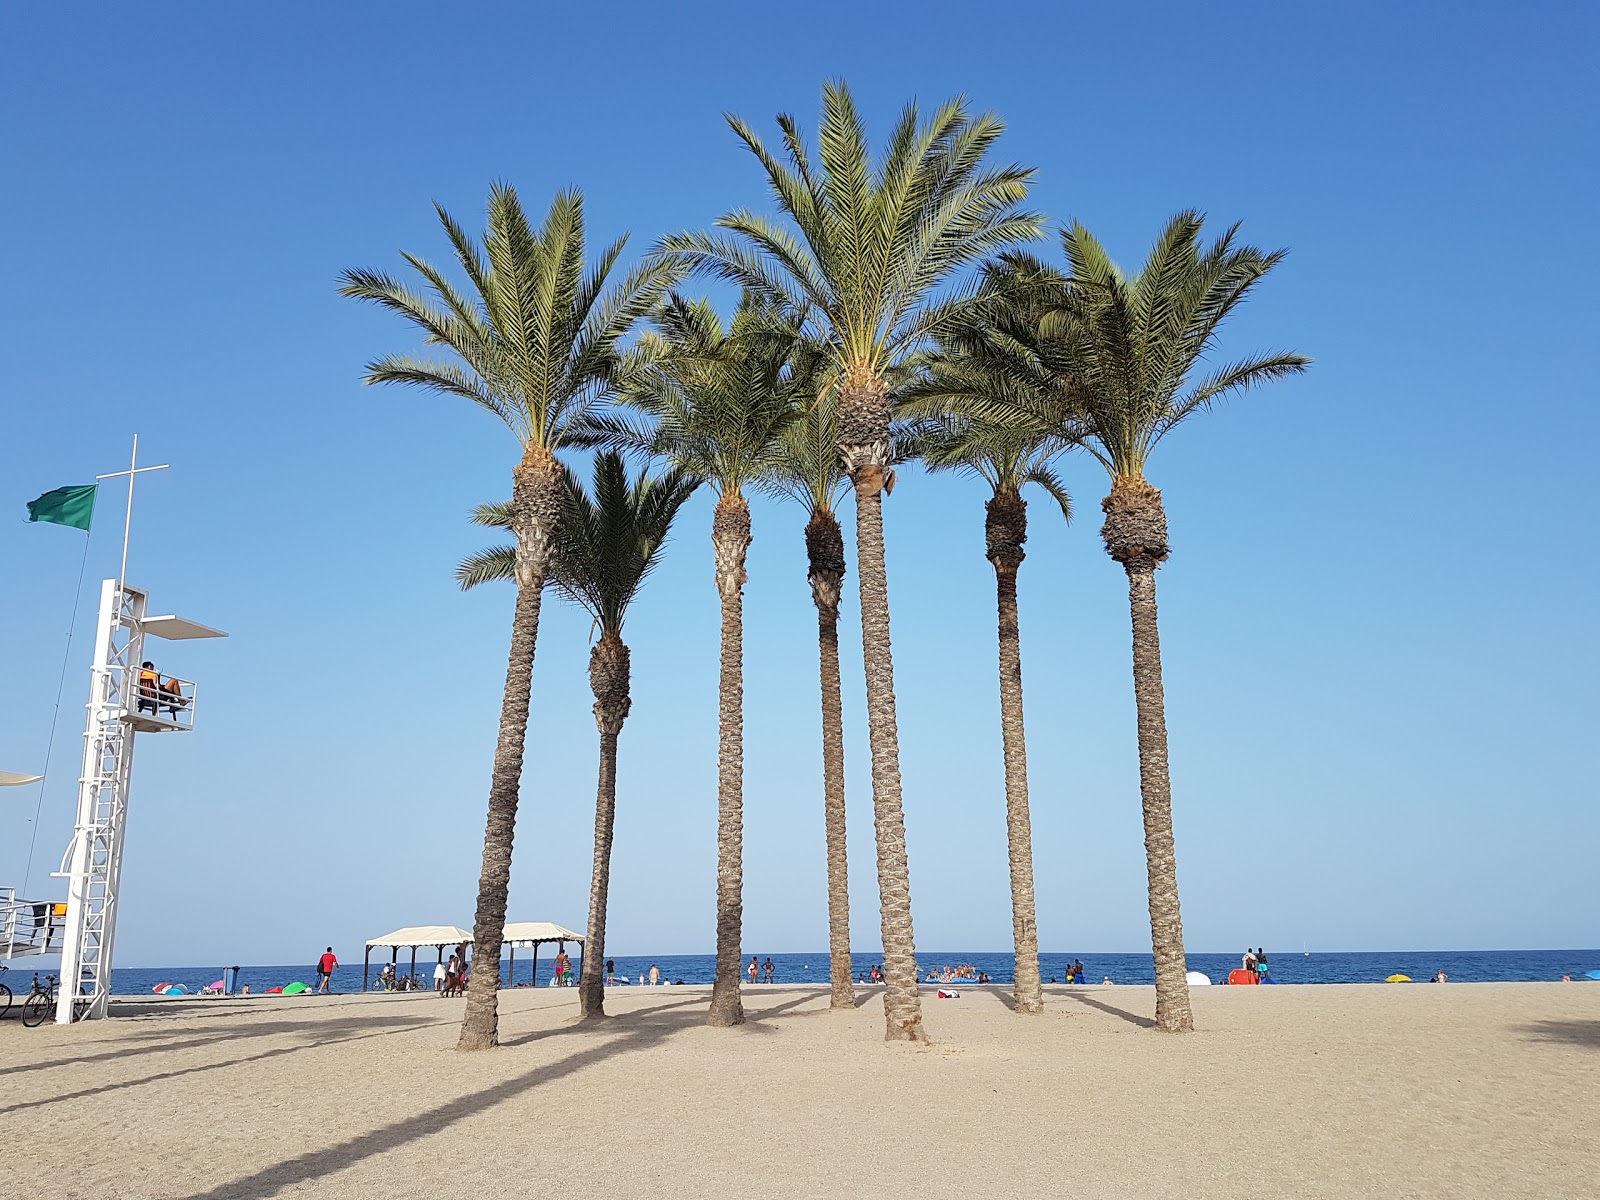 Foto af Playa de la Romanilla - populært sted blandt afslapningskendere